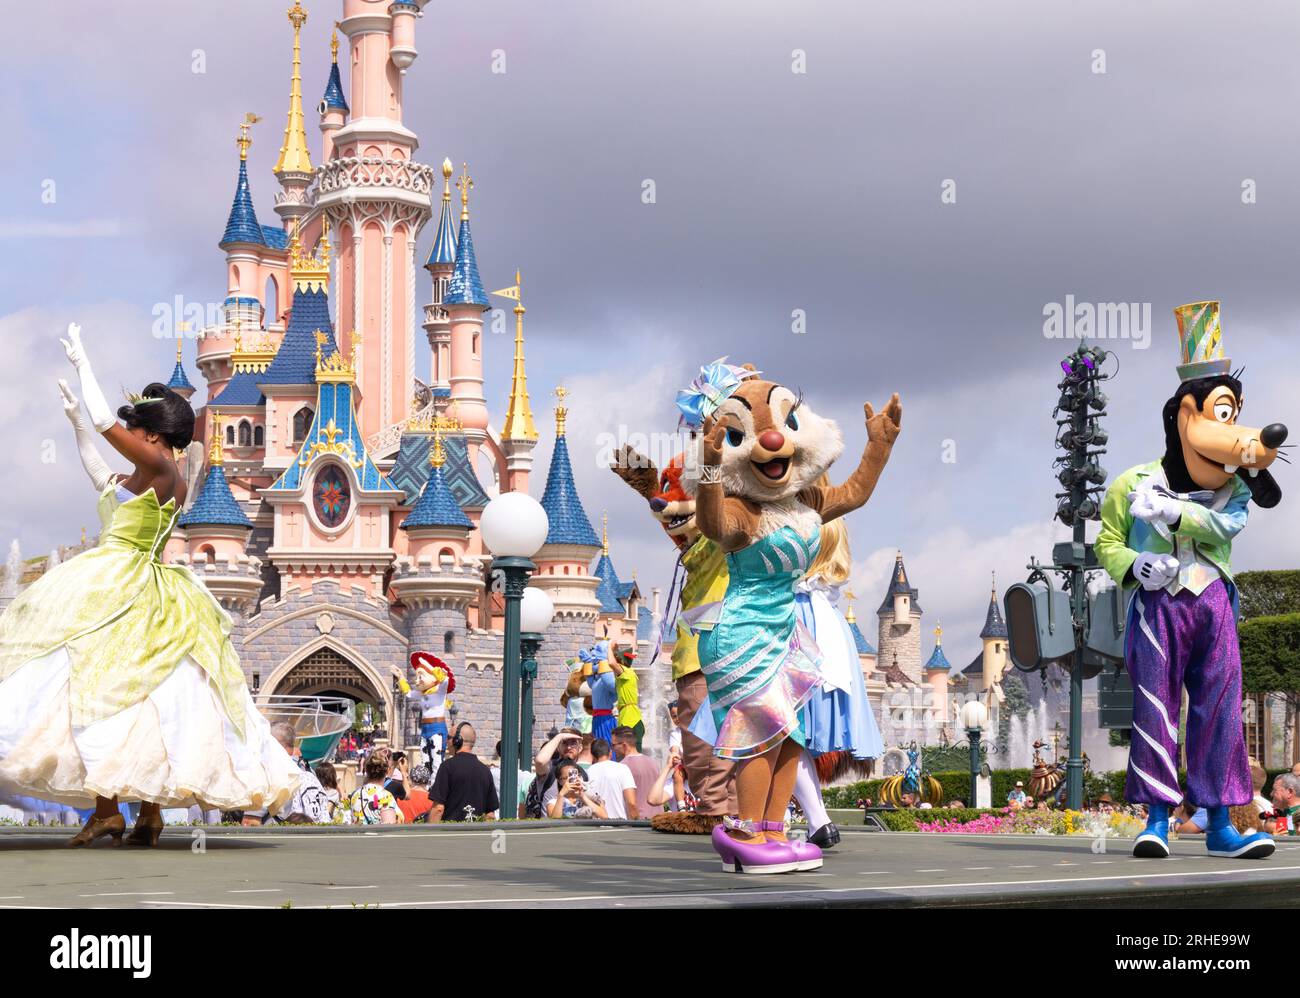 Disneyland Paris ; personnages Disney devant le château de Disneyland dansant pendant la Parade de Disneyland ; Princesse Tiana, Clarice et Dingo ; France Banque D'Images